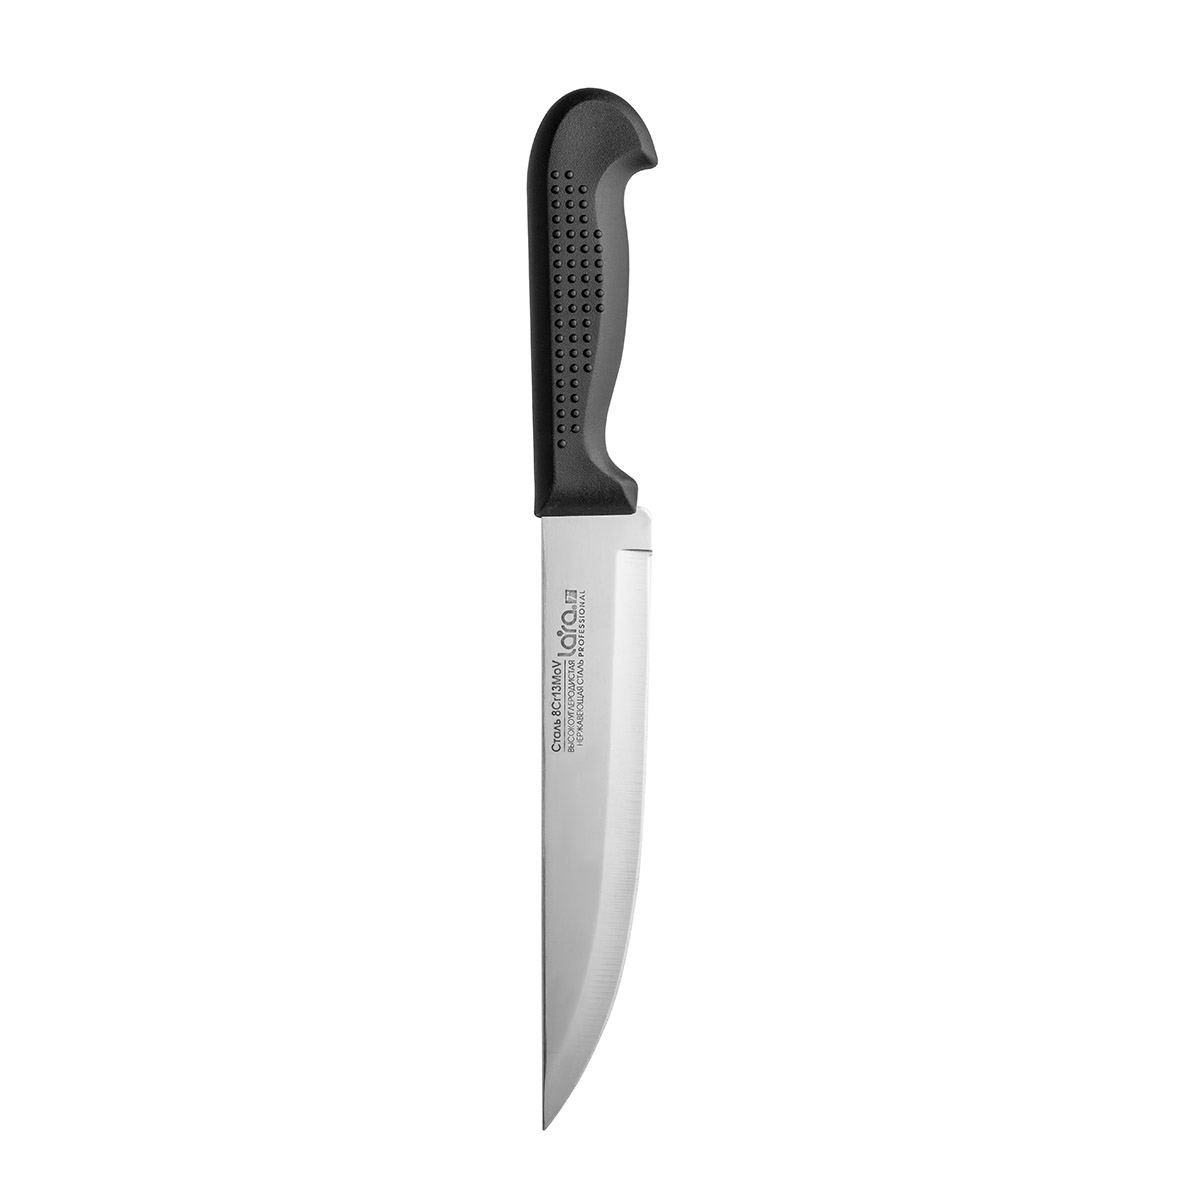 Нож LARA LR05-45 поварской 17.8см/7", пластиковая чёрная ручка, сталь 8CR13Mov 1 мм, (блистер)